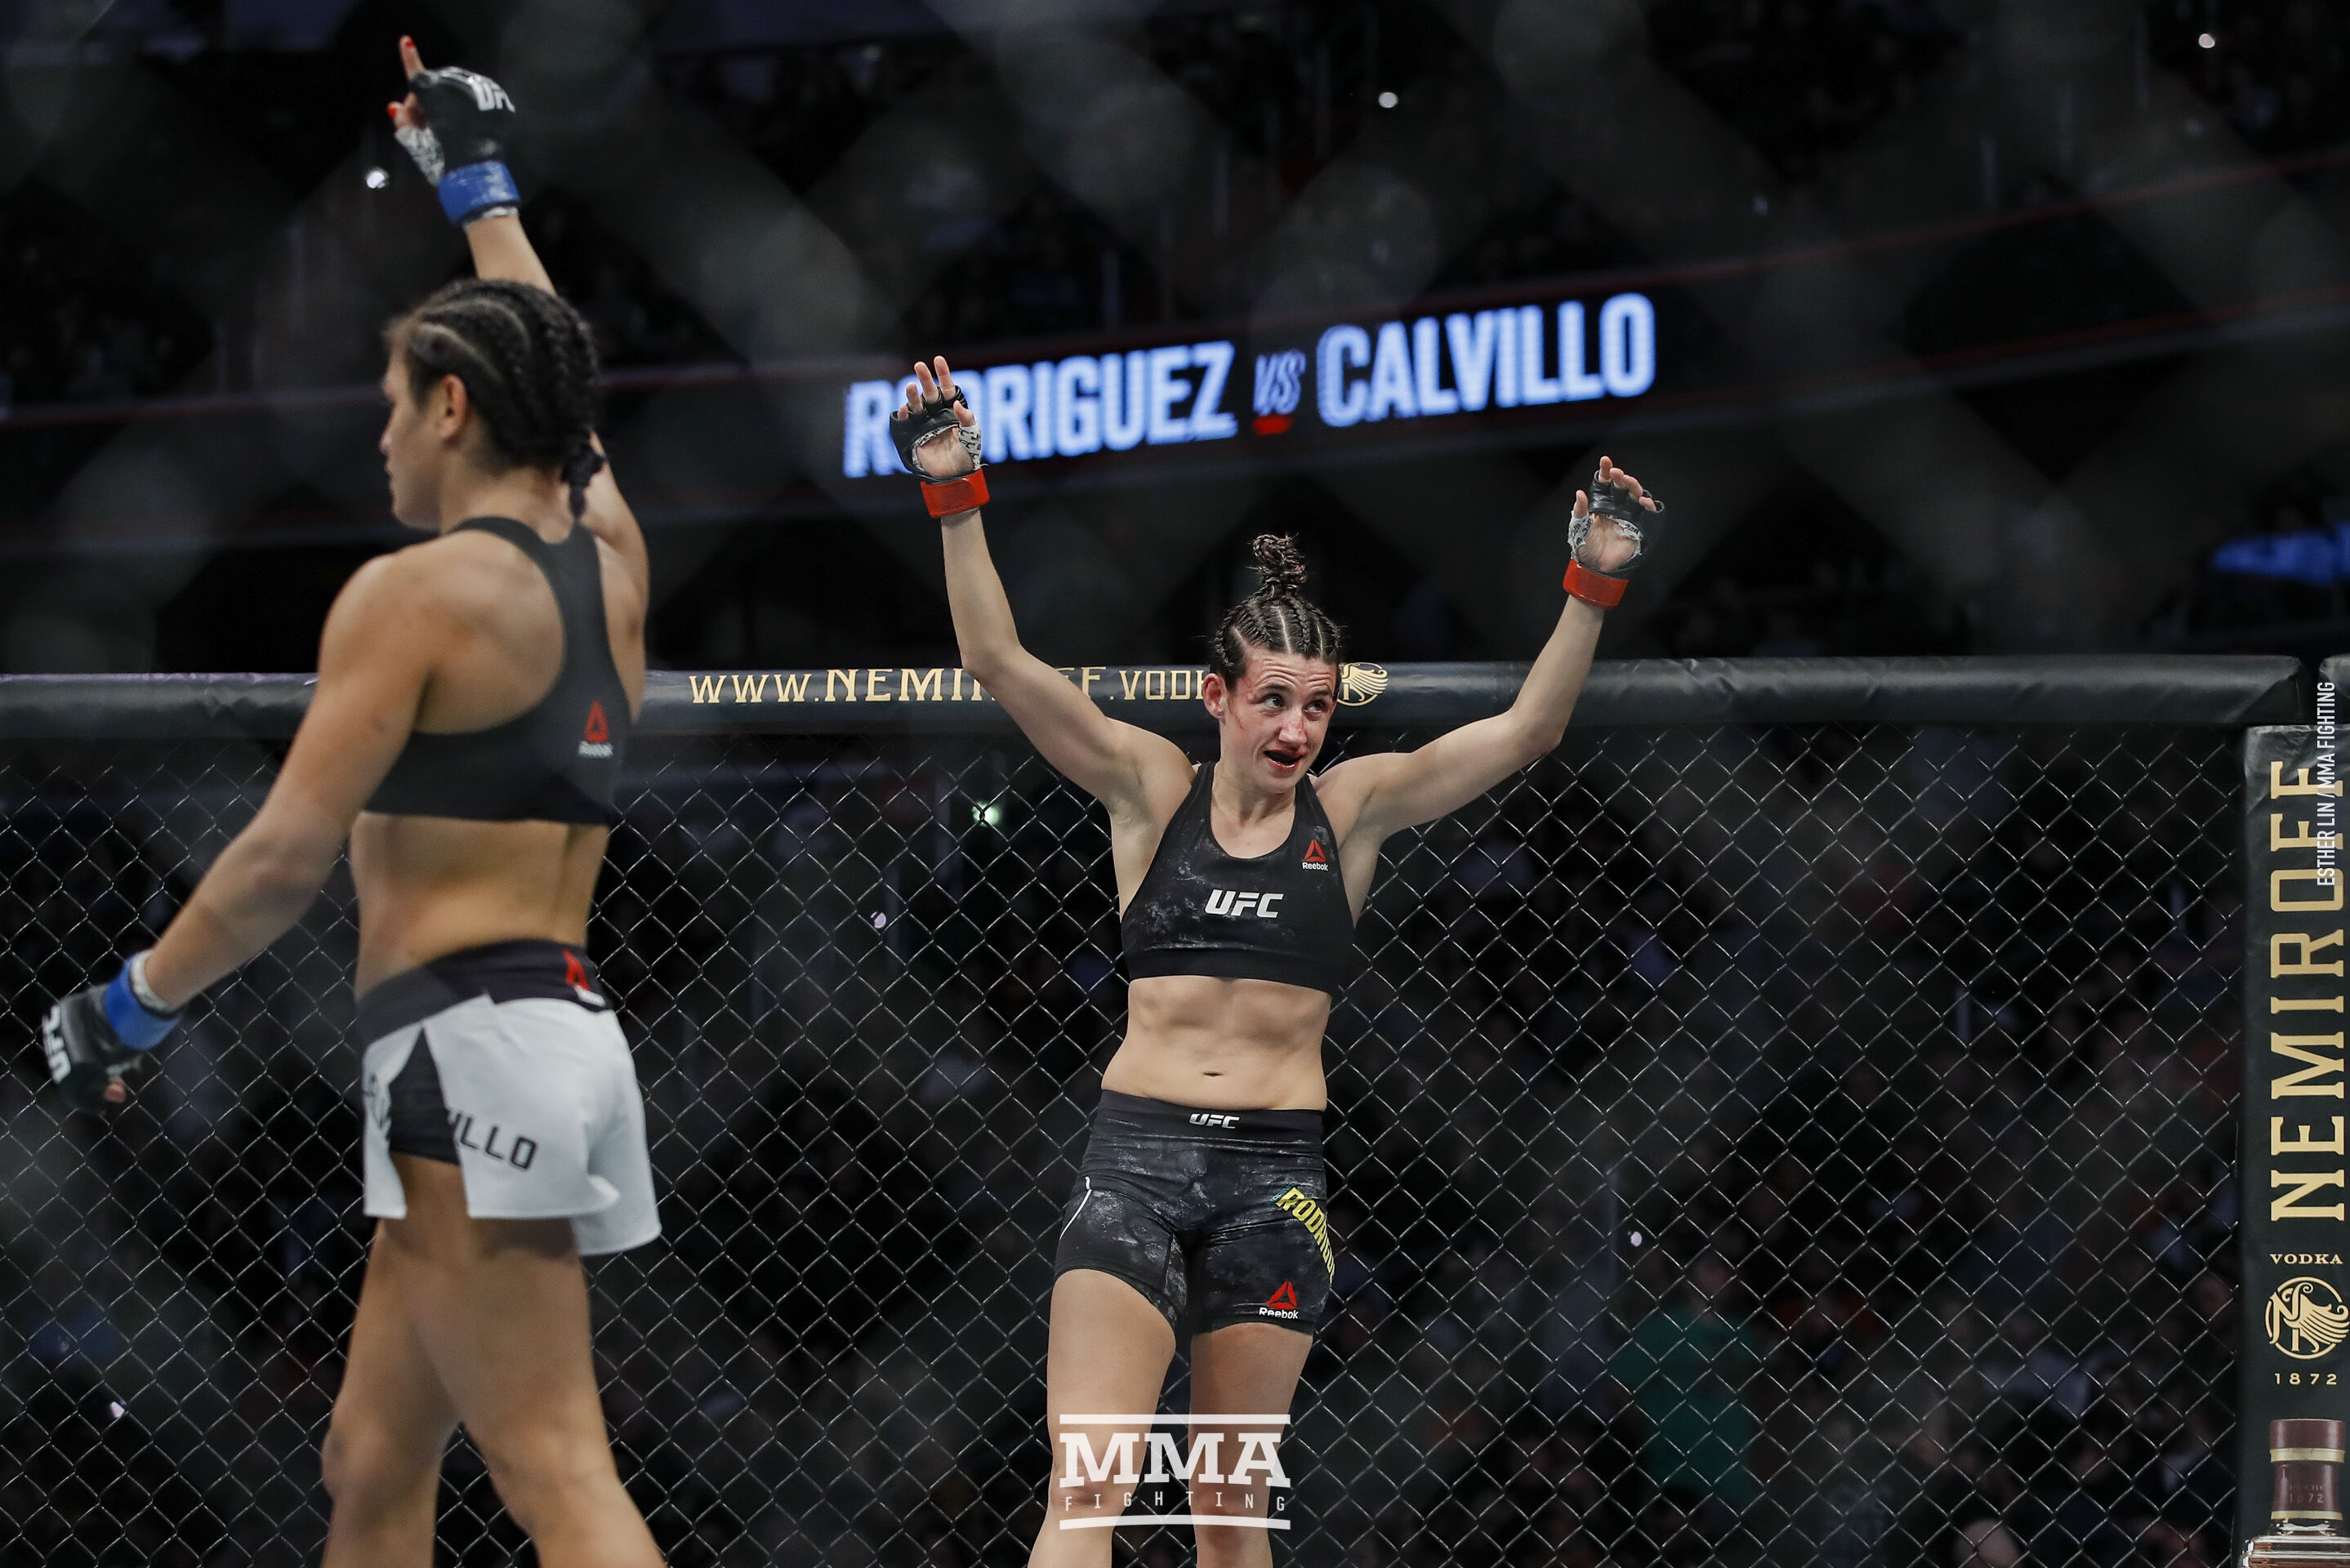 Marina Rodriguez vs Cynthia Calvillo. 